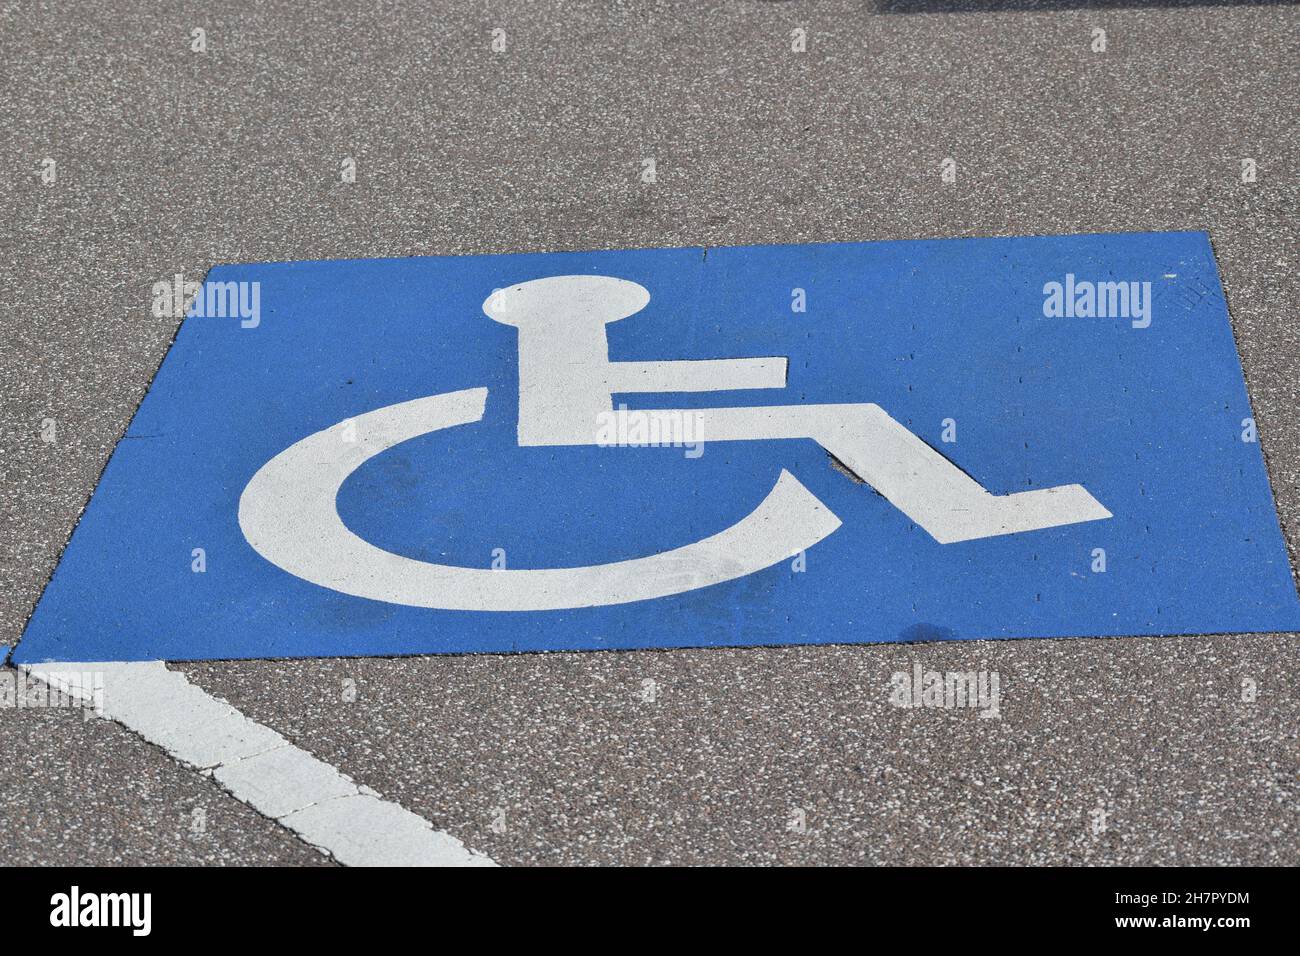 Un symbole indique la zone de stationnement réservée aux personnes handicapées. Banque D'Images